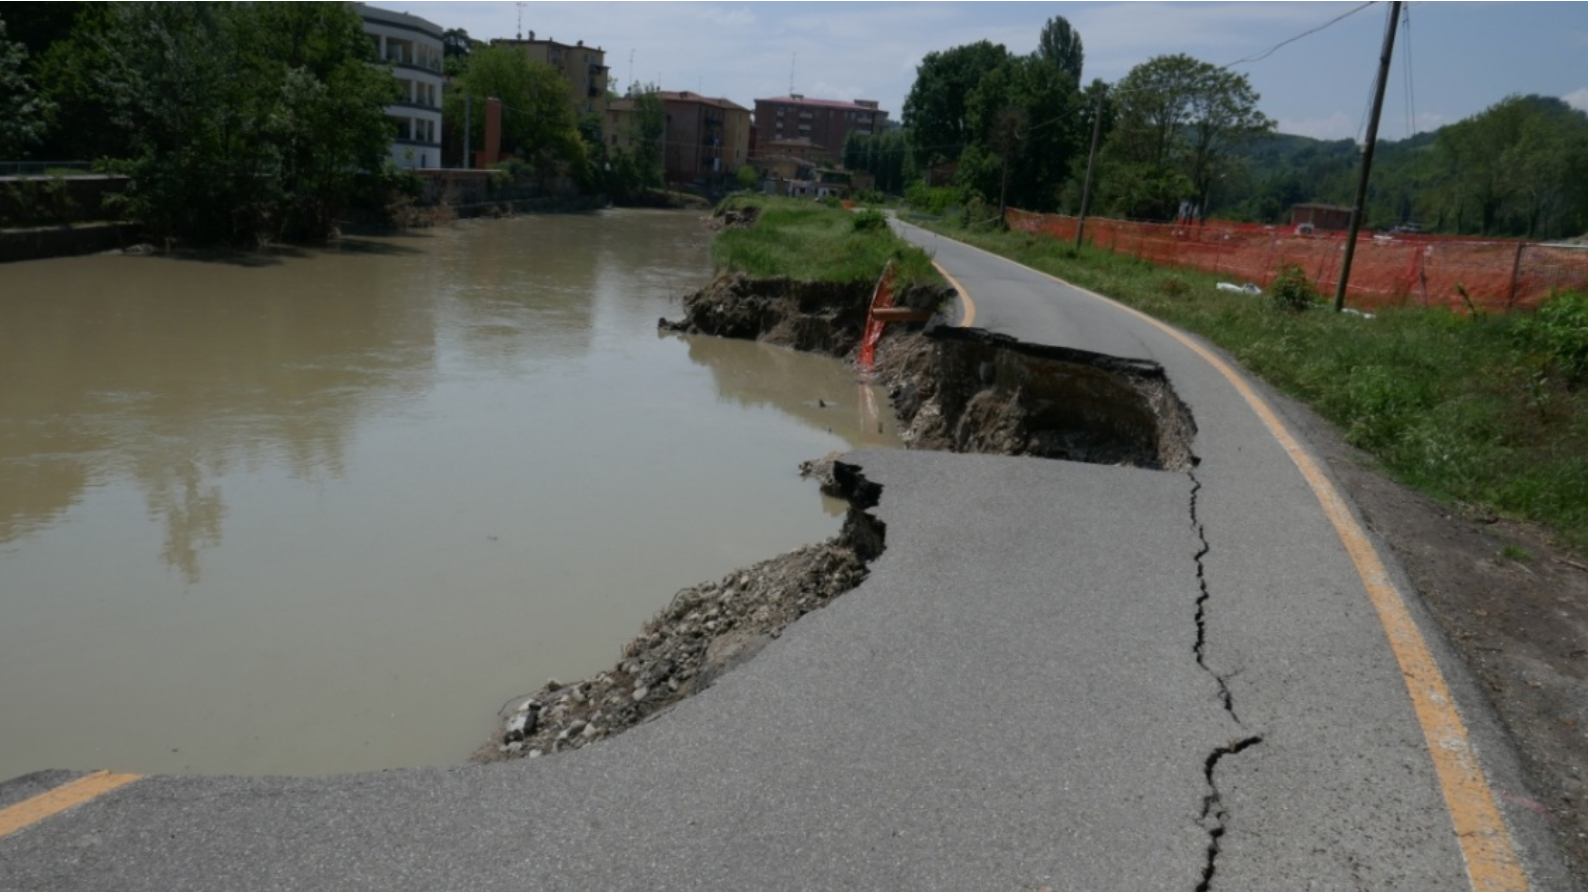 Le alluvioni in Emilia-Romagna: un disastro che impone domande e la ricerca di soluzioni.